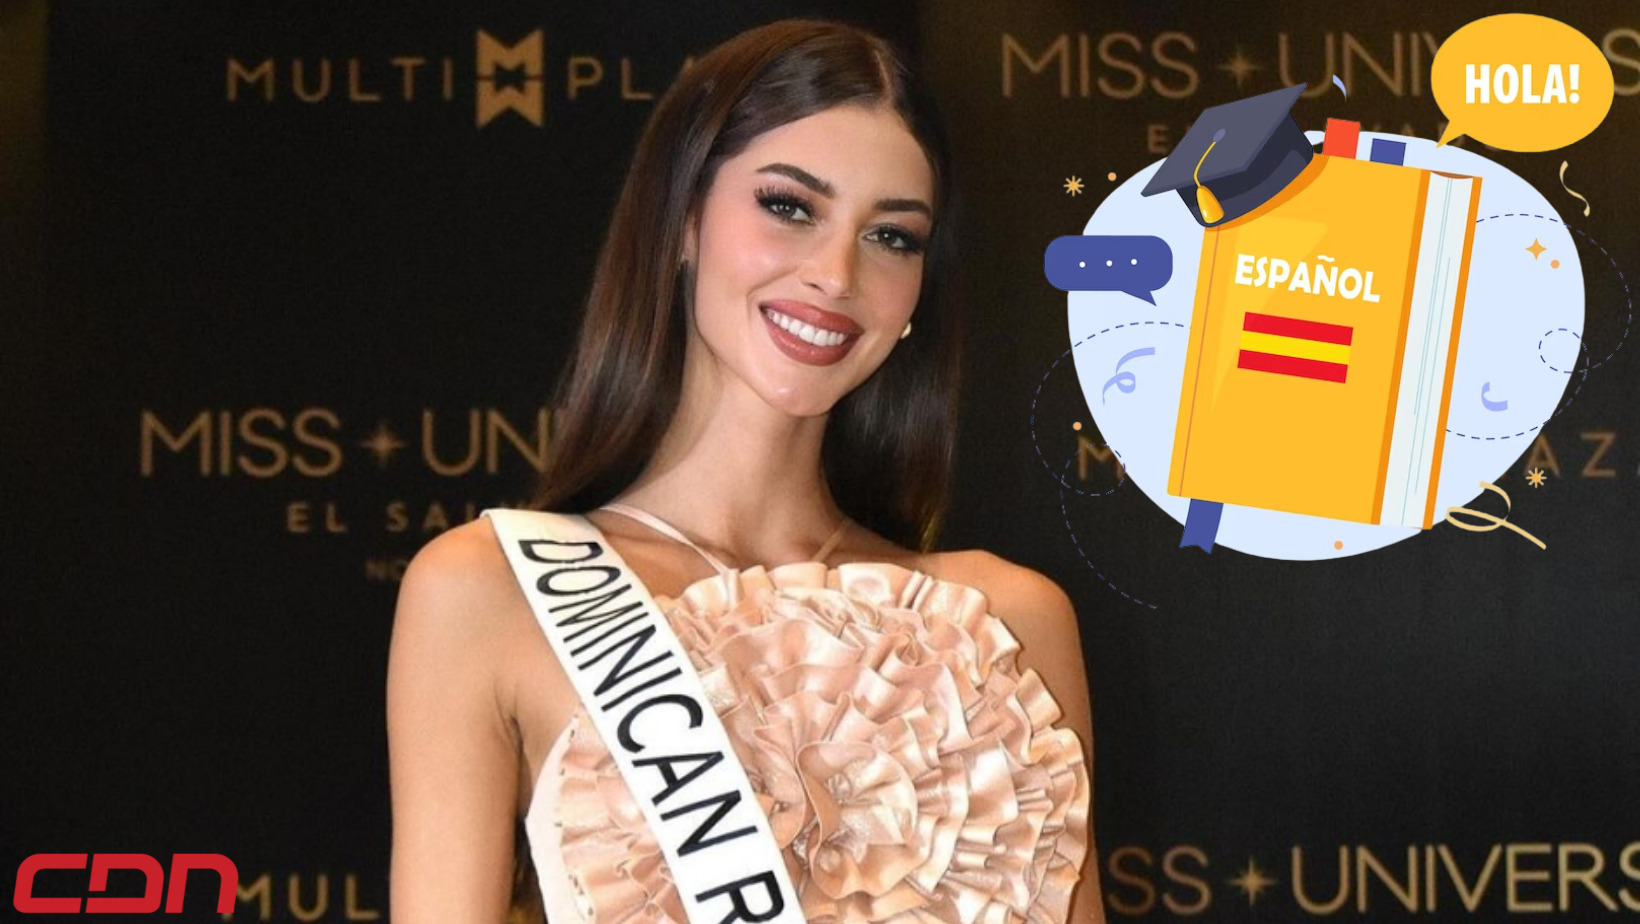 ¿Dónde quedó el español de Mariana Downing en preliminares Miss Universo?